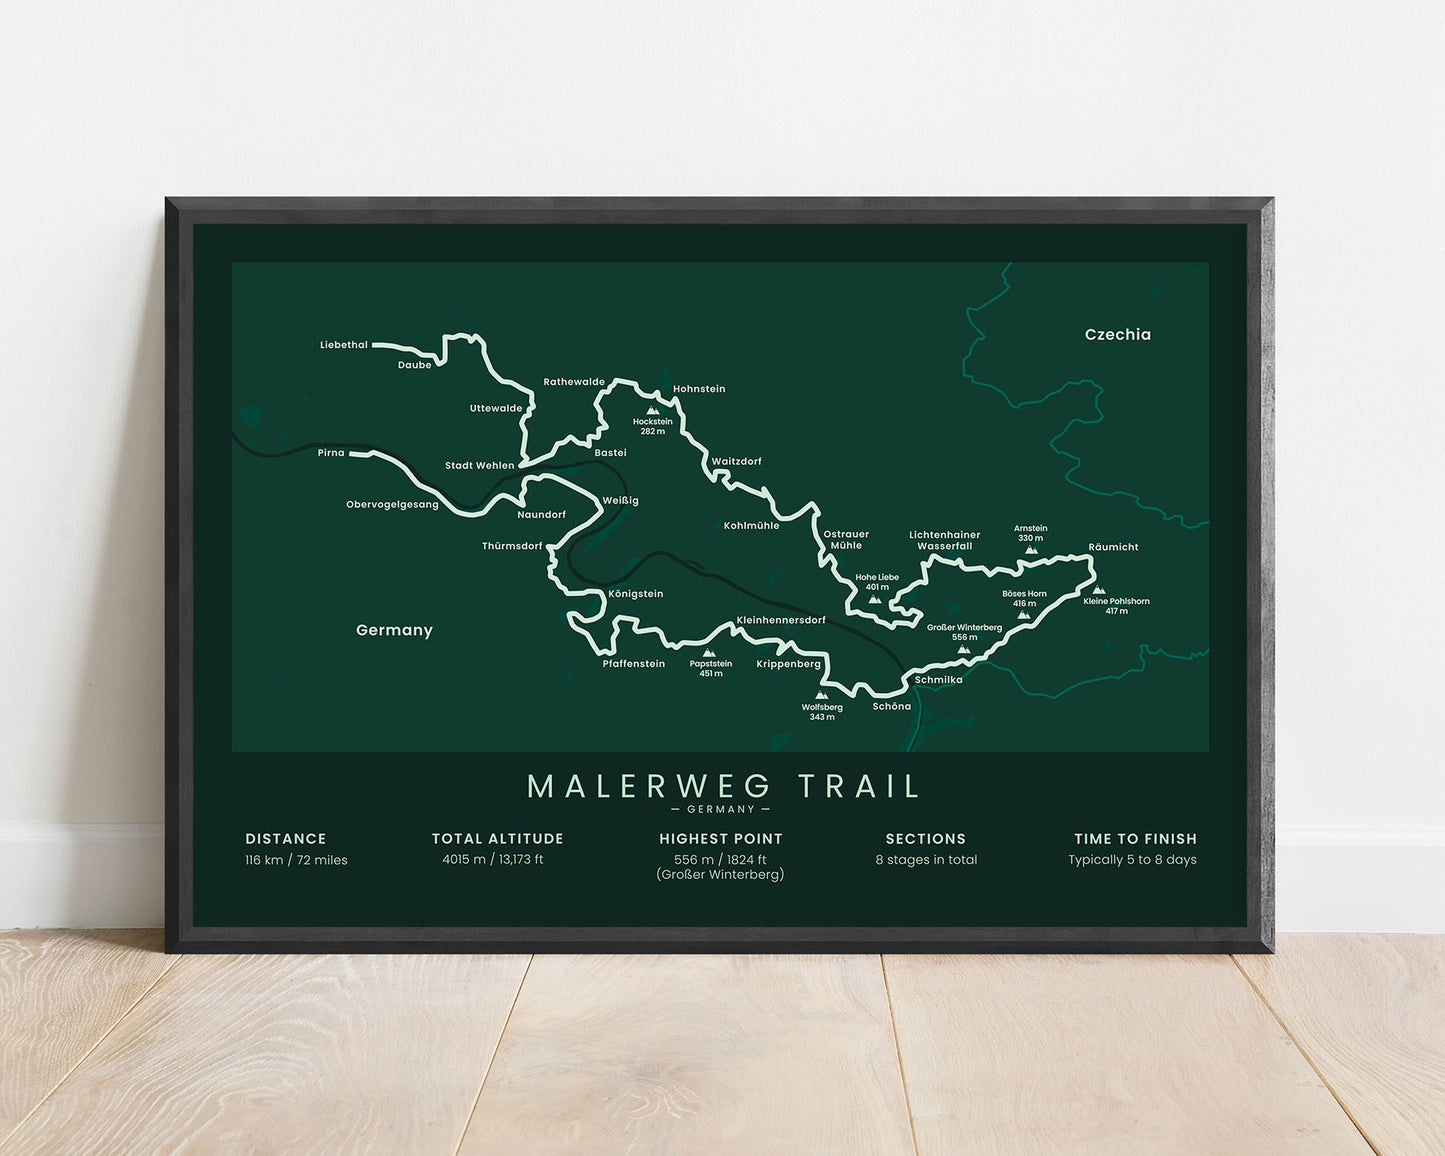 Malerweg Trail (Elbe Sandstone Mountains) Trek Map Art with Green Background